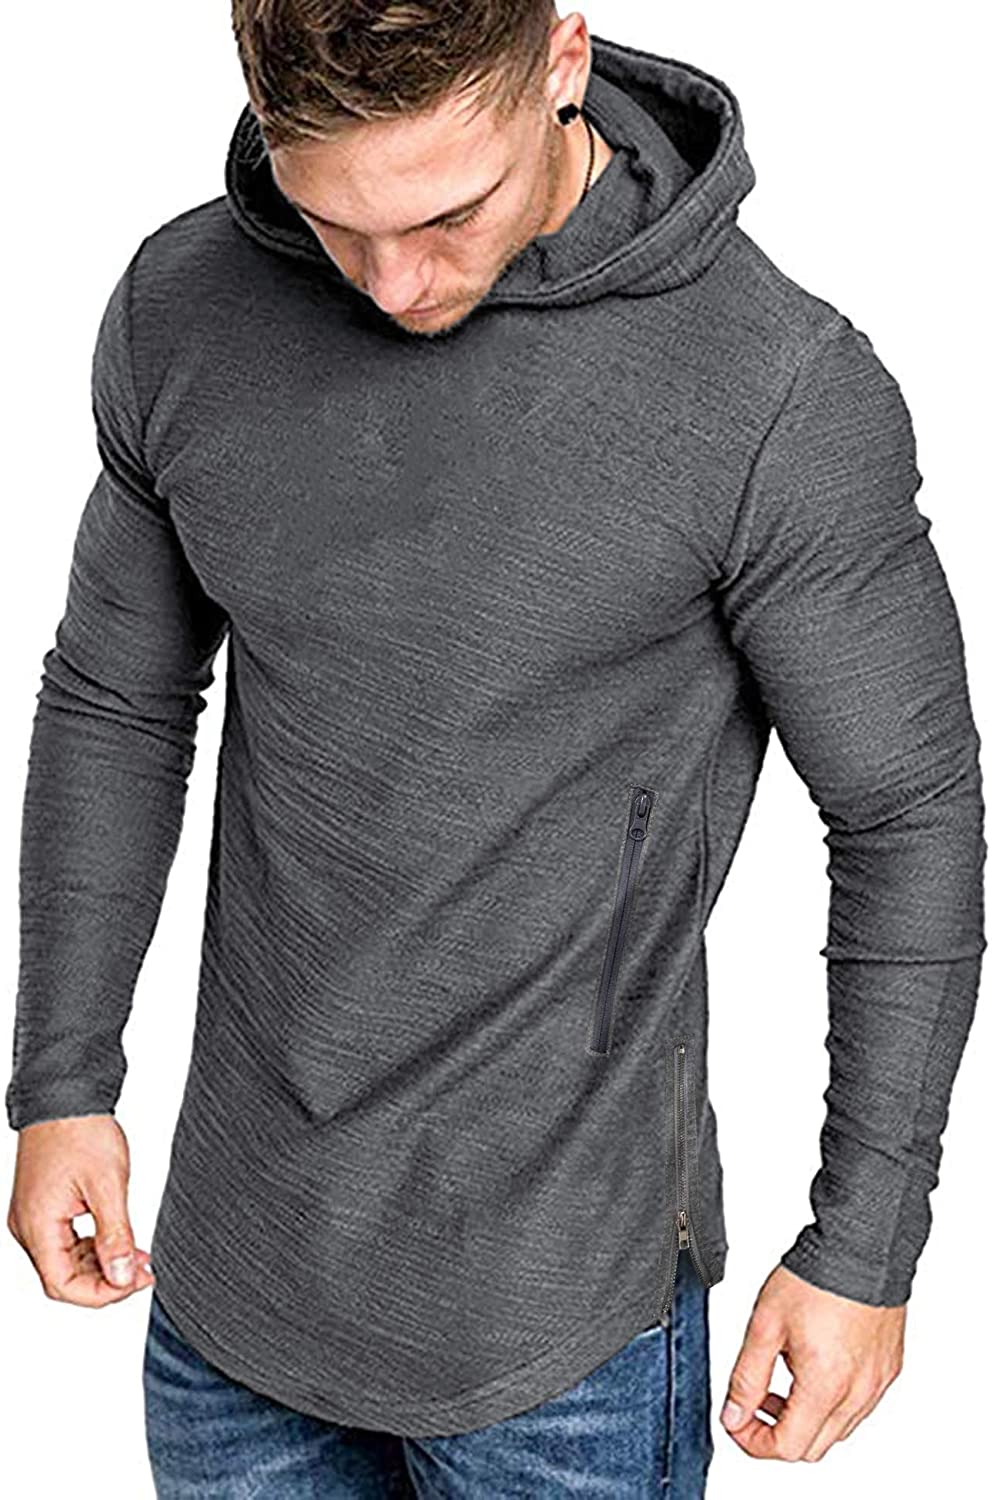 COOFANDY Mens Athletic Hoodies Slim Fit Long Sleeve Gym Sweatshirt ...